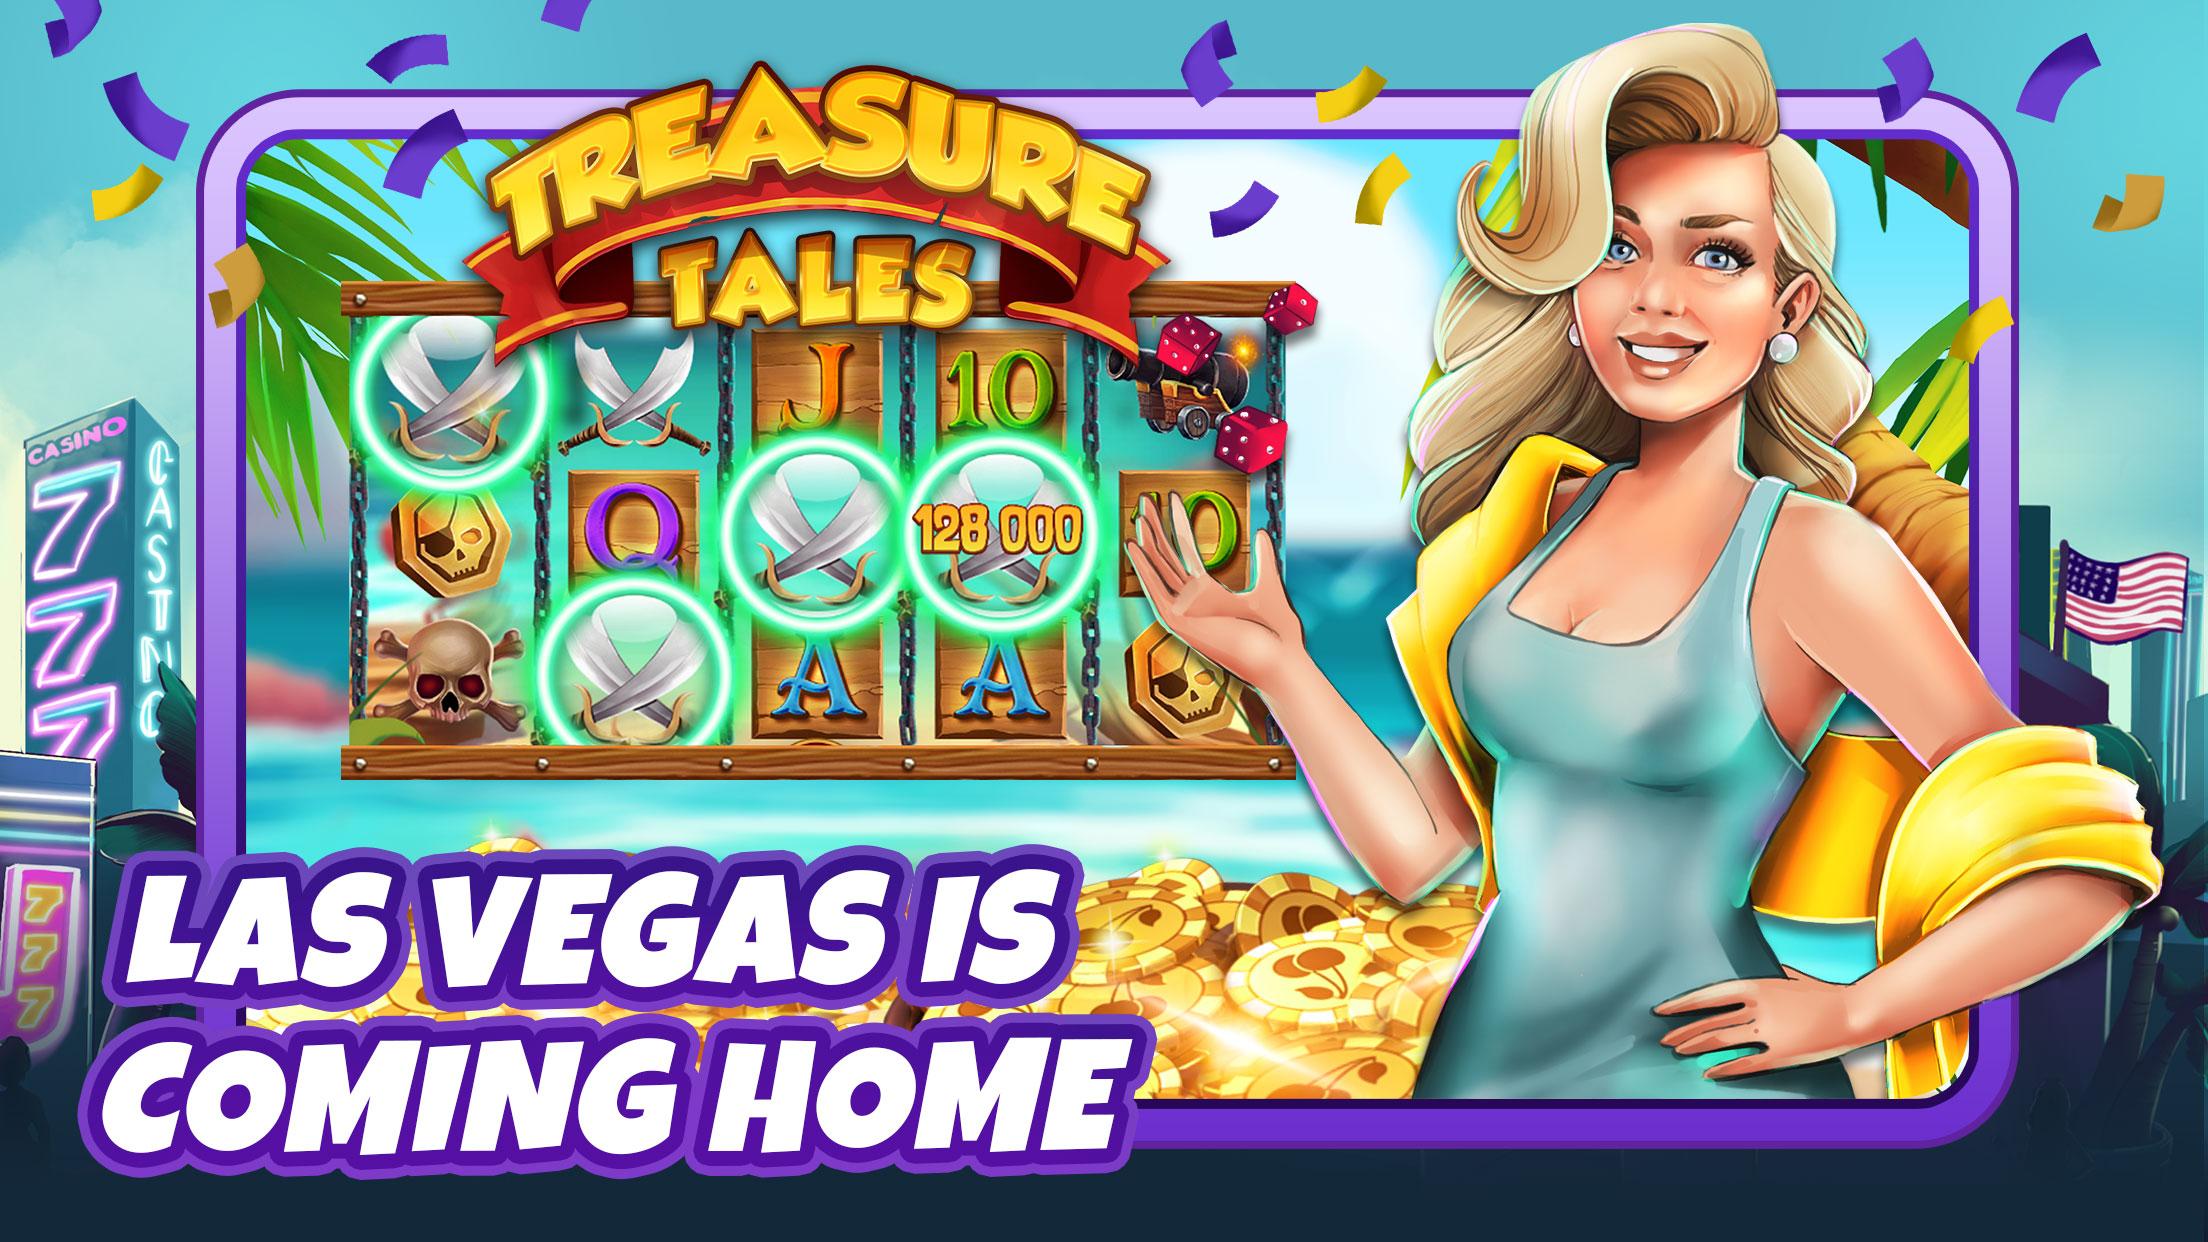 Mary Vegas - Huge Casino Jackpot & slot machines 4.11.4 Screenshot 1